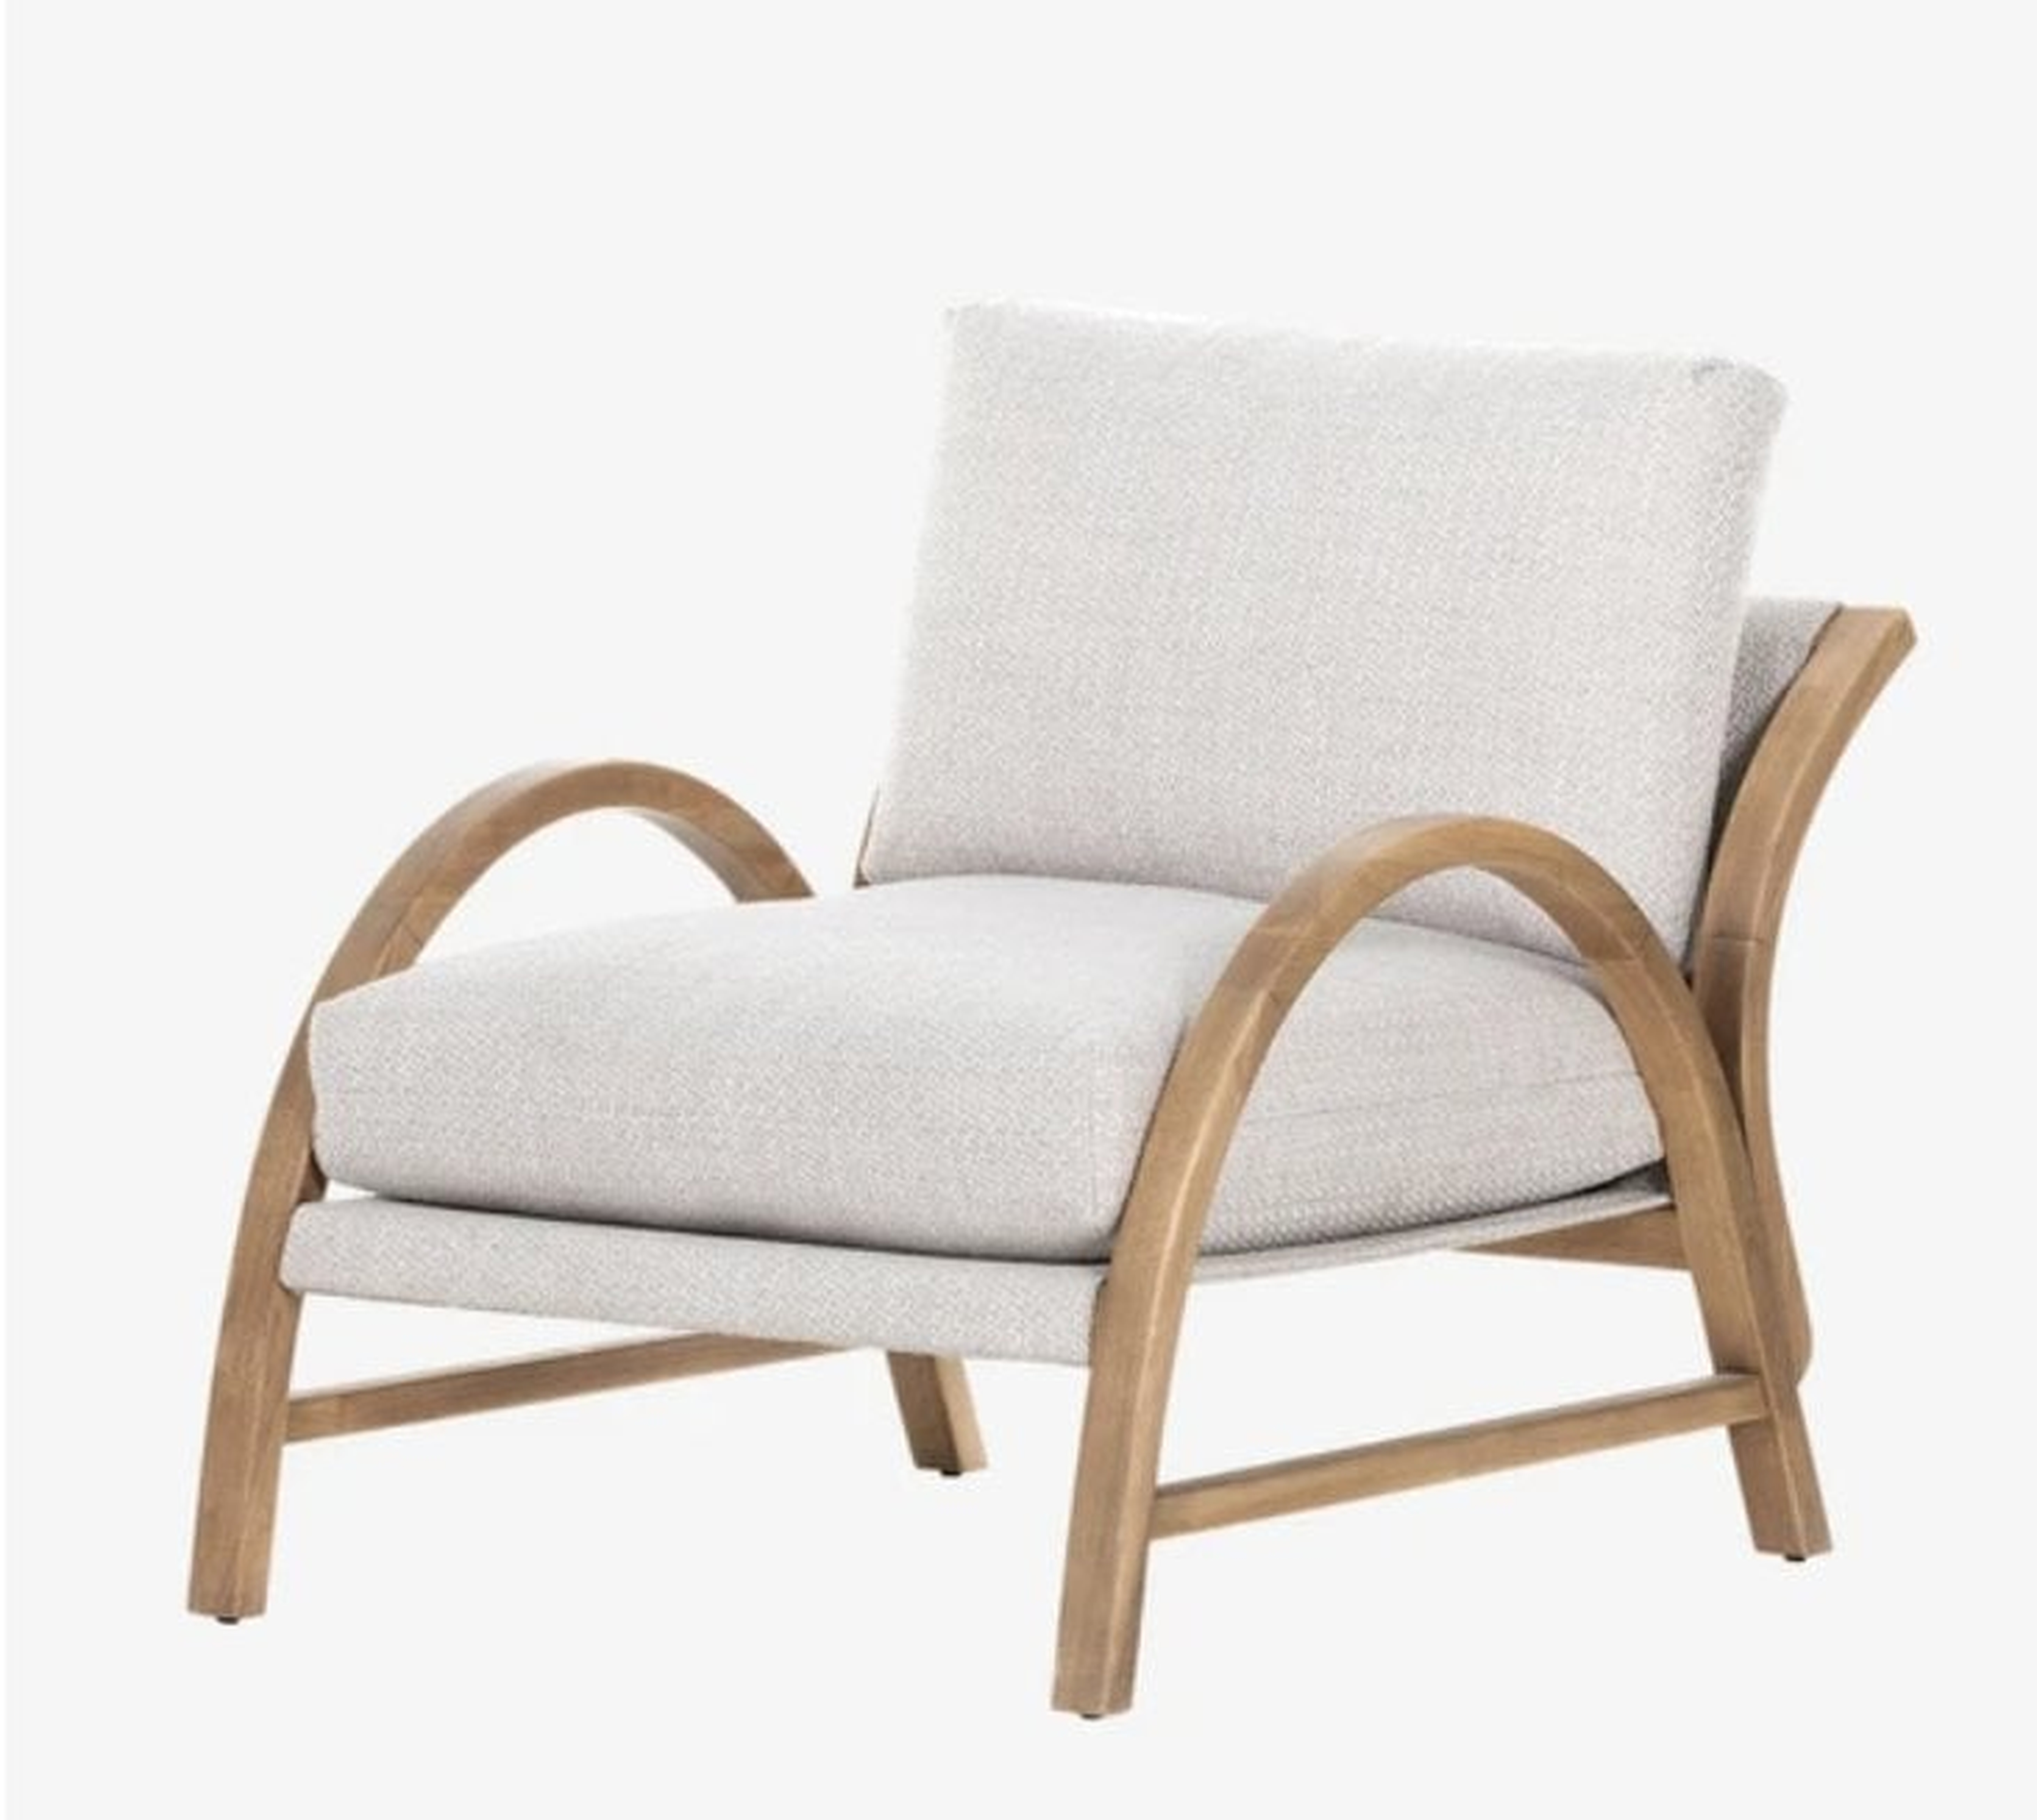 Estrada Chair - McGee & Co.